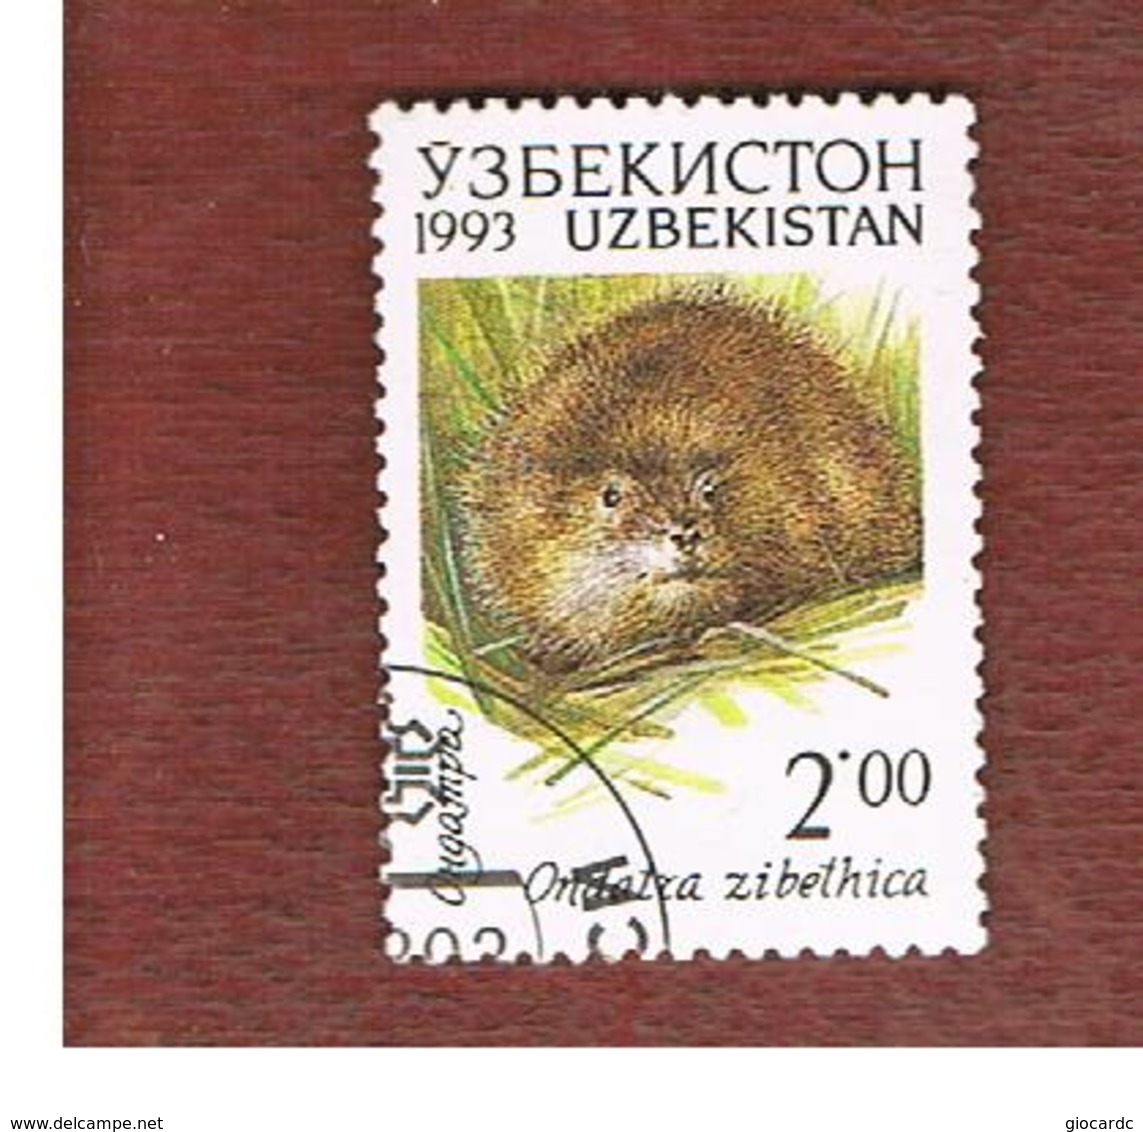 UZBEKISTAN   - SG 9  - 1993 ANIMALS: ONDATRA ZIBETHICA  -   USED - Uzbekistan